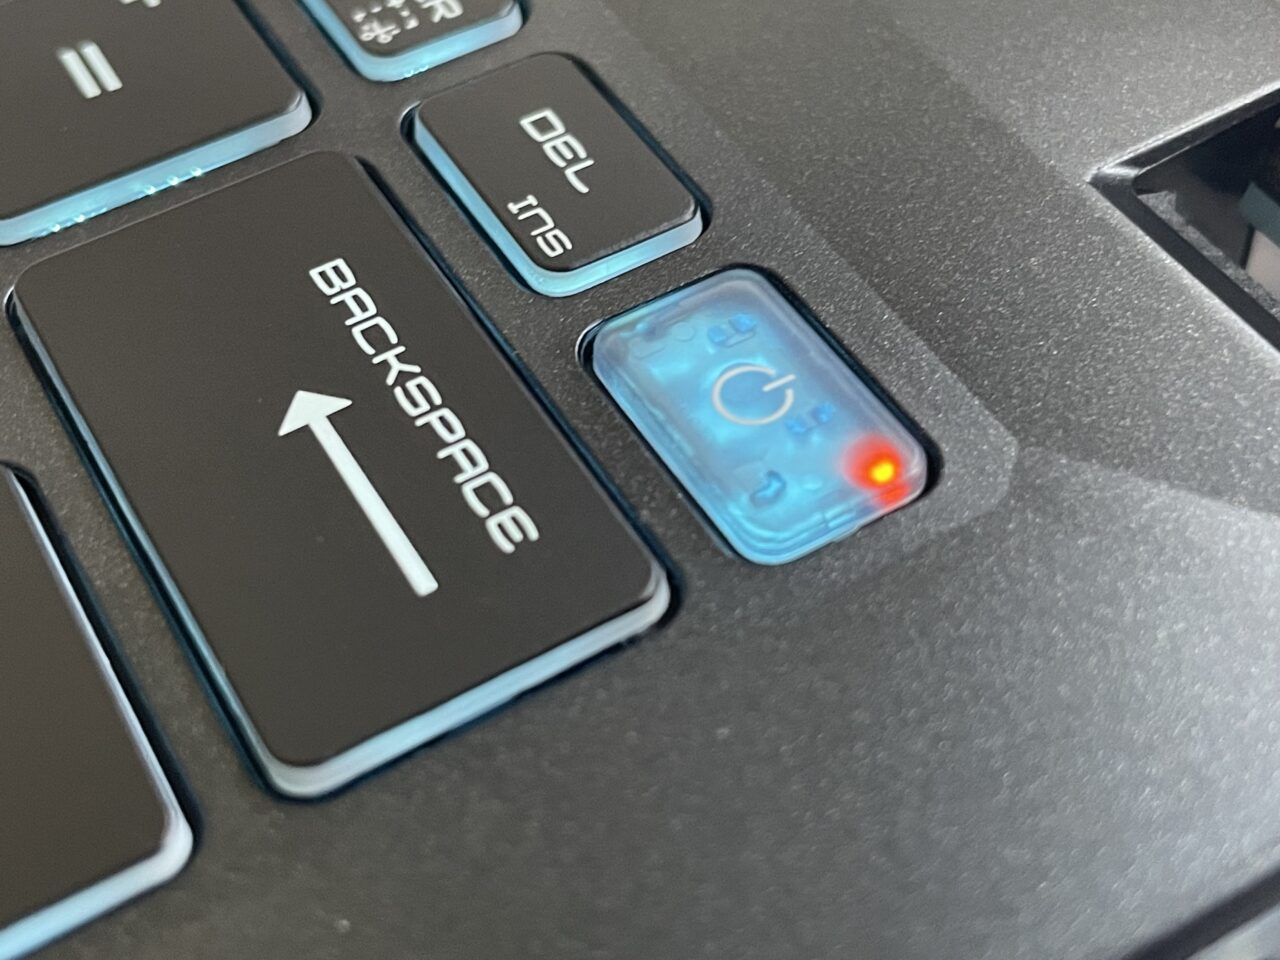 Część klawiatury laptopa z wyróżnionym przyciskiem 'Backspace' i świecącym czerwonym światłem wskaźnika zasilania.